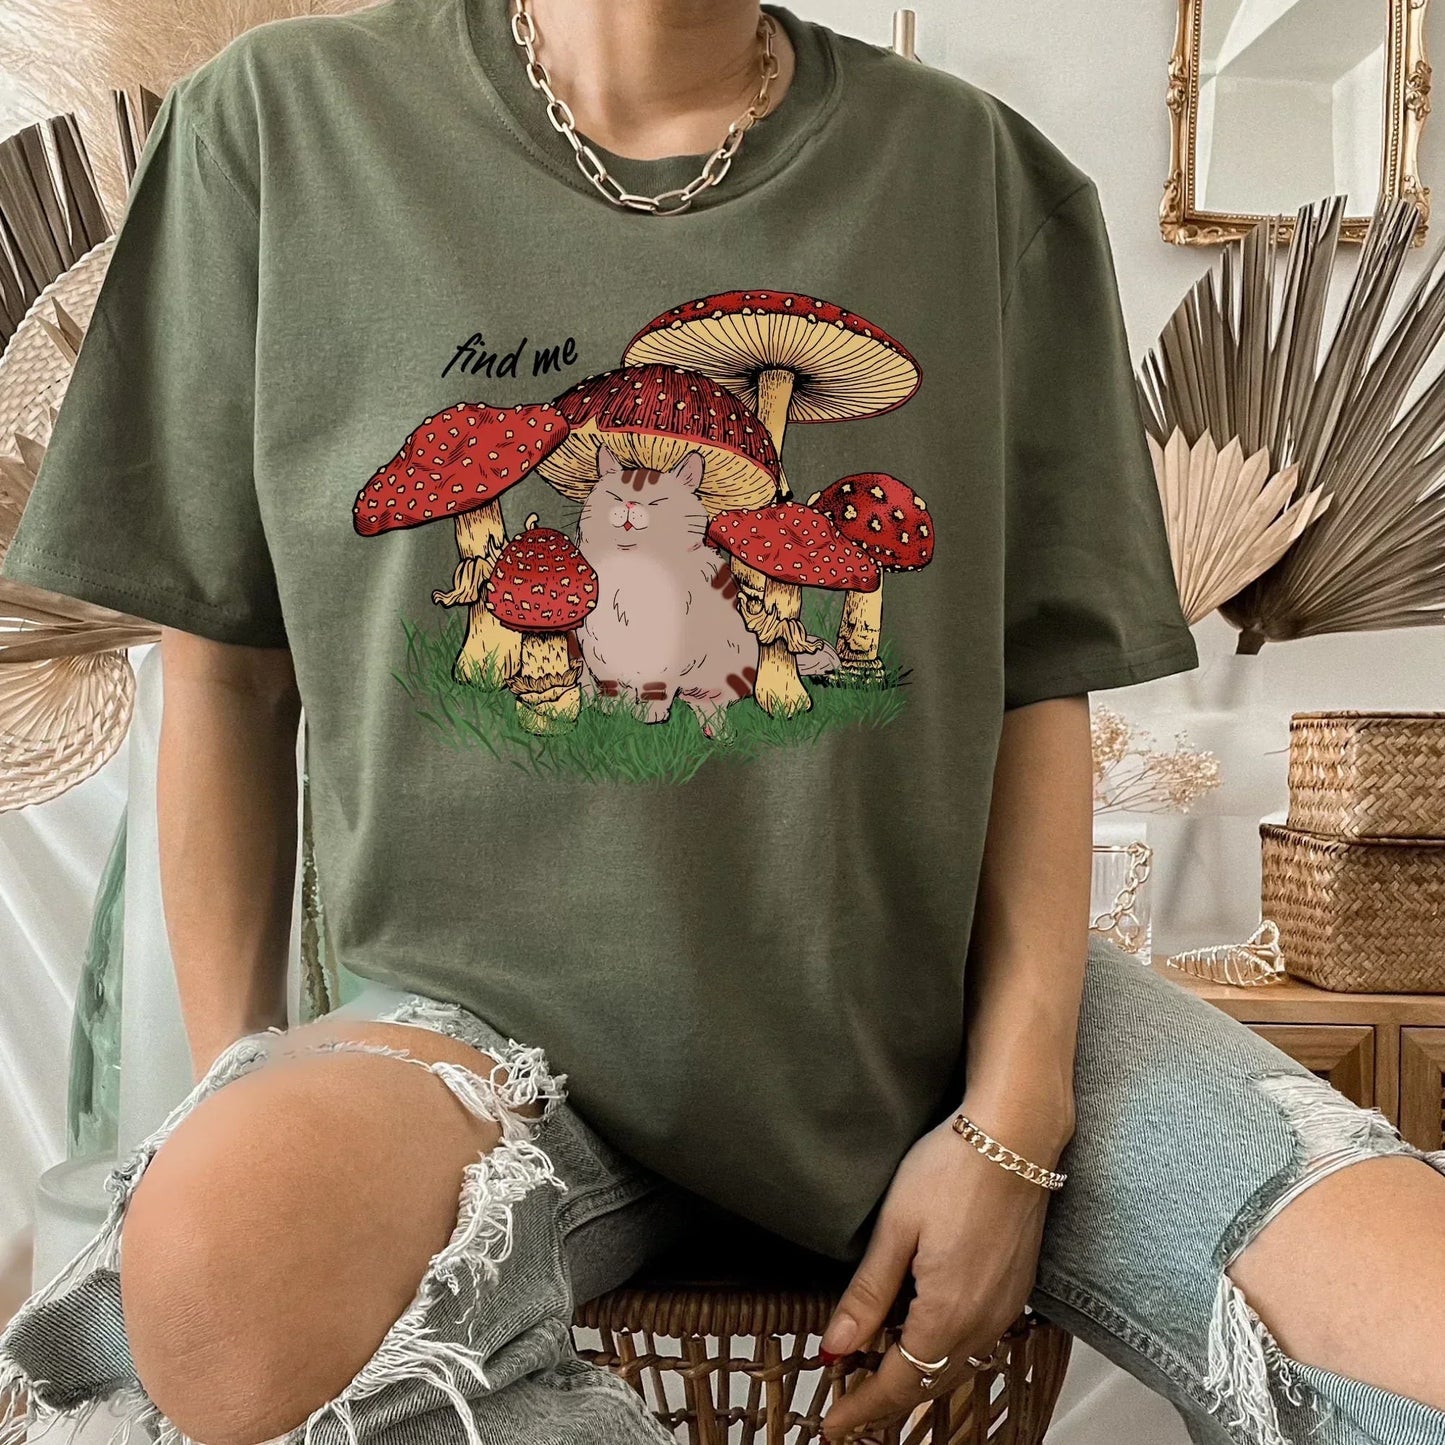 Magic Mushroom Shirt, Psilocybine Mushroom Sweater, Celestial Shirt, Dark Academia, Goblincore Clothing, Cat Sweatshirt, Moon Child Shirt HMDesignStudioUS